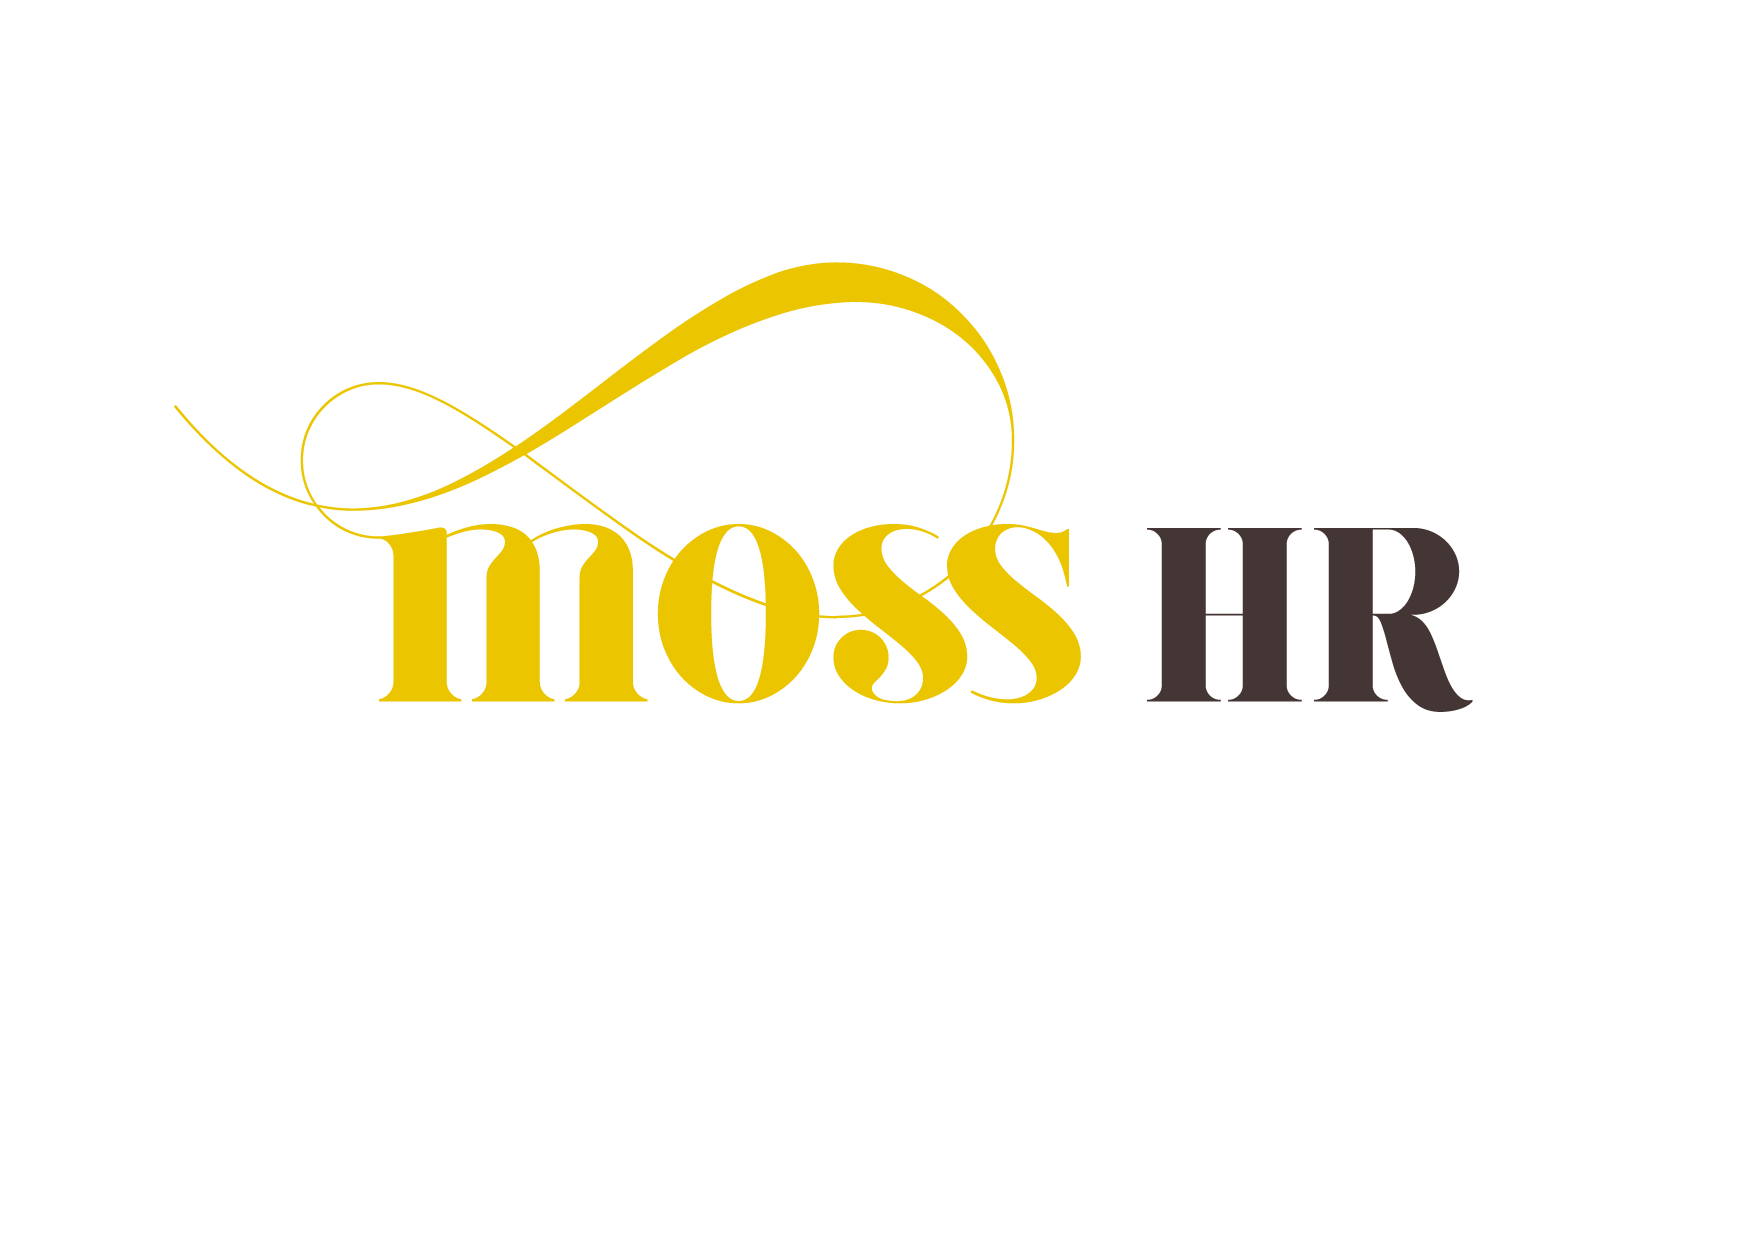 Moss hr logo